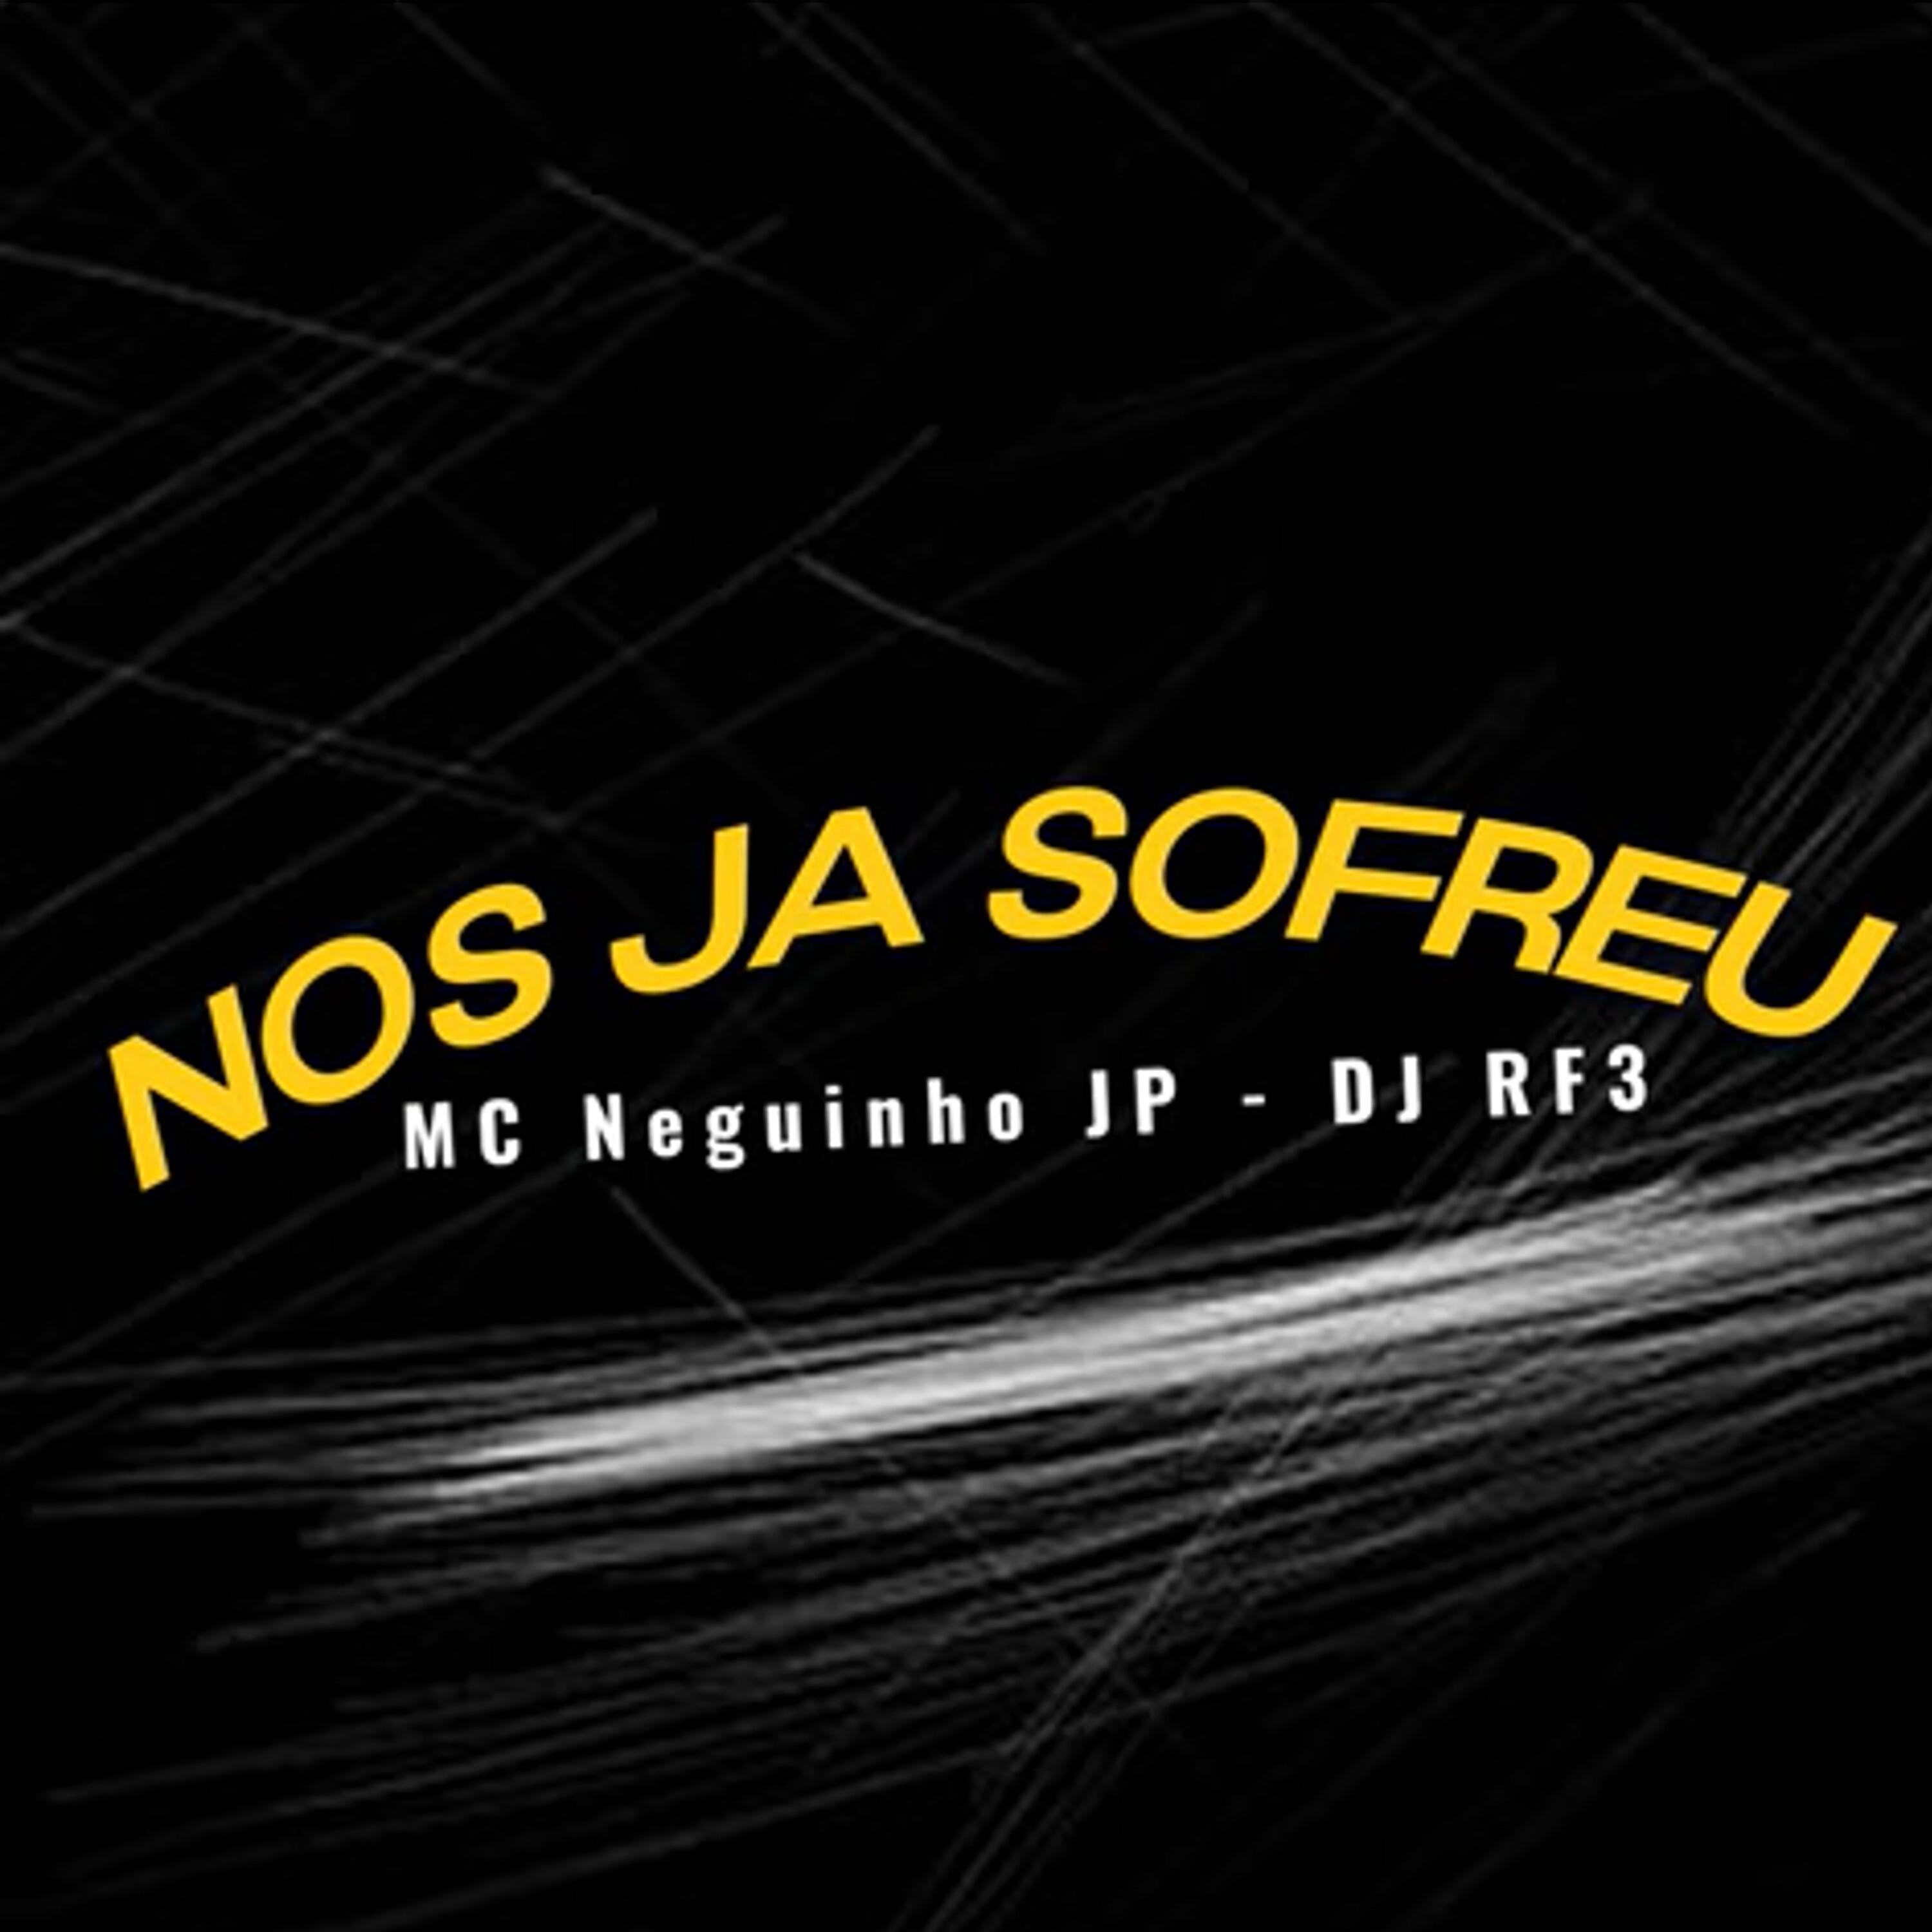 MC Neguinho JP - Nos Ja Sofreu